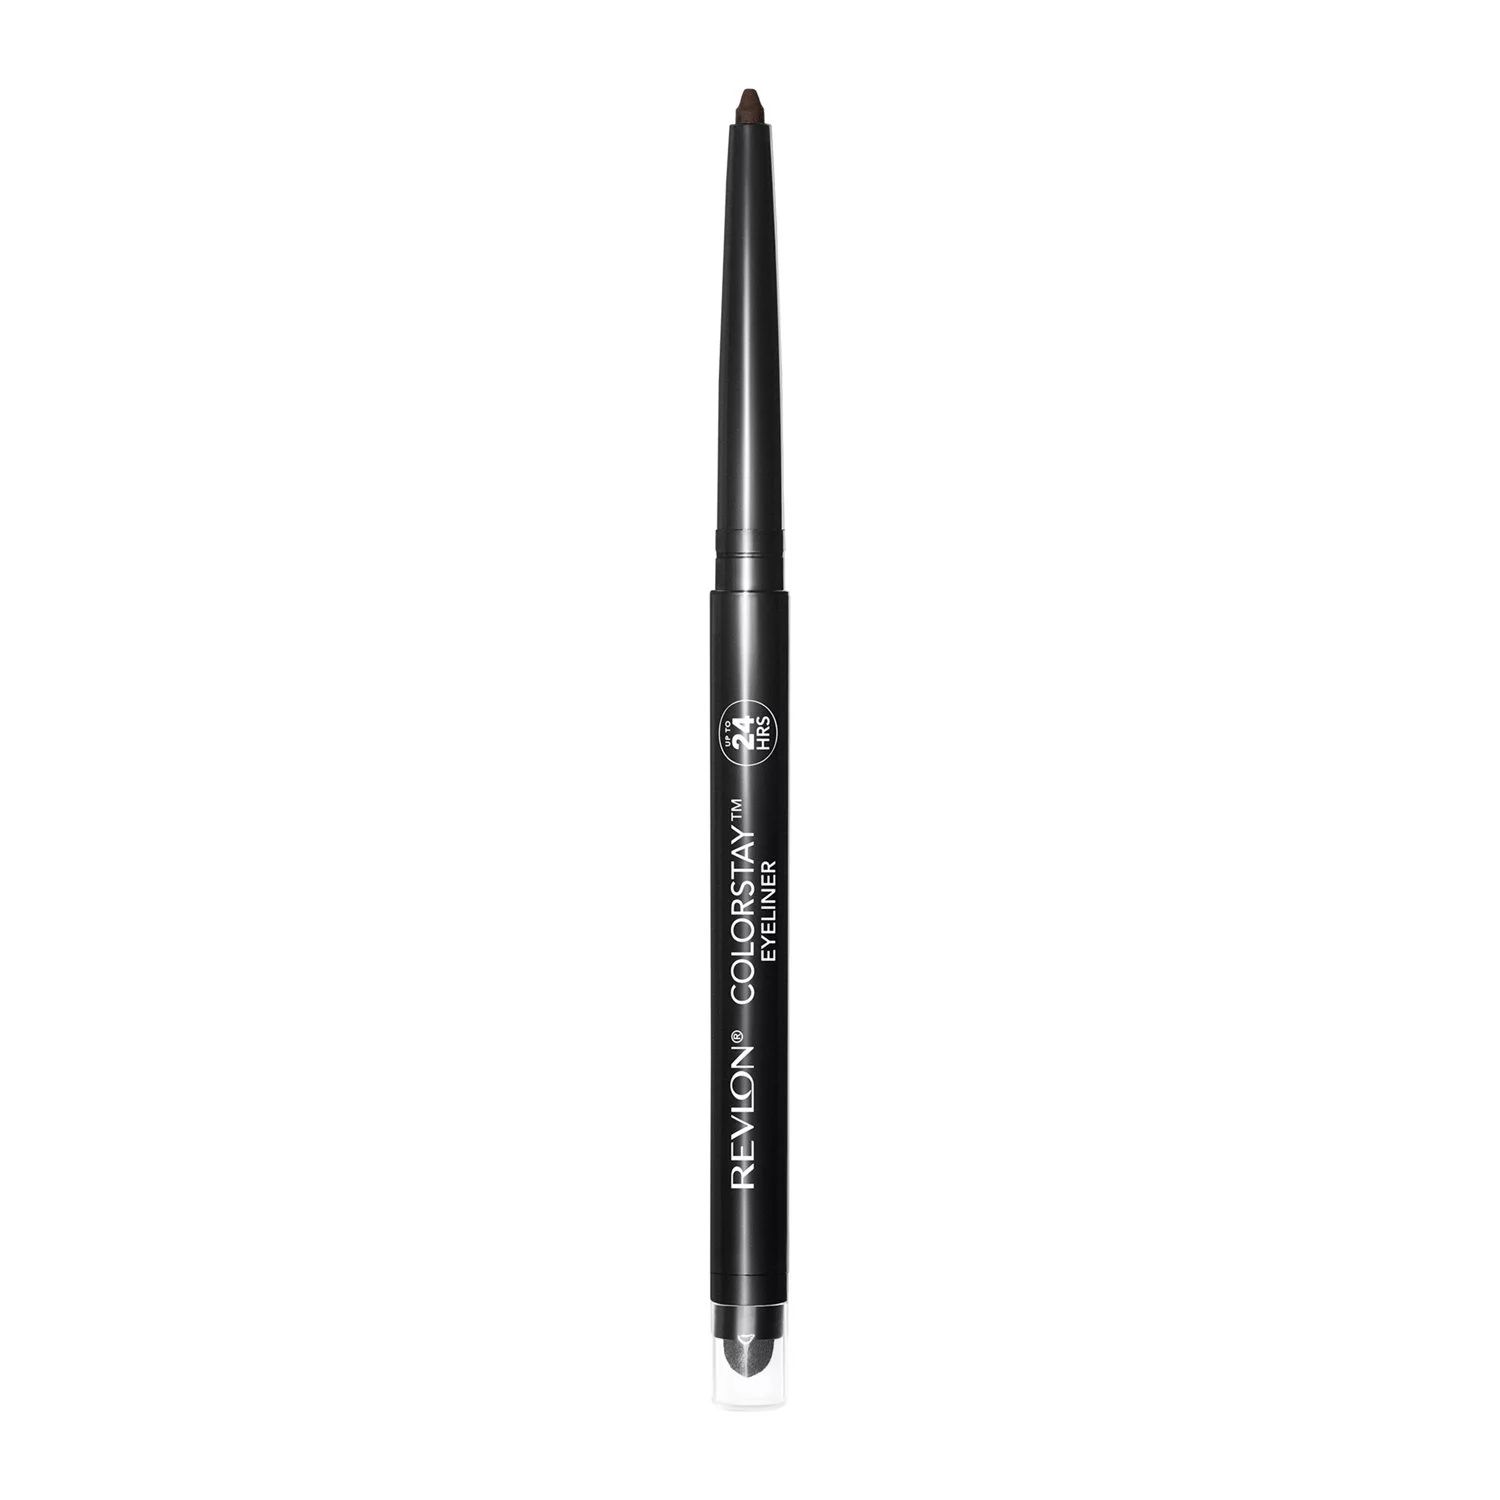 Revlon ColorStay Waterproof Eyeliner Pencil, 24HR Wear, Built-in Sharpener, 202 Black Brown - Wal... | Walmart (US)